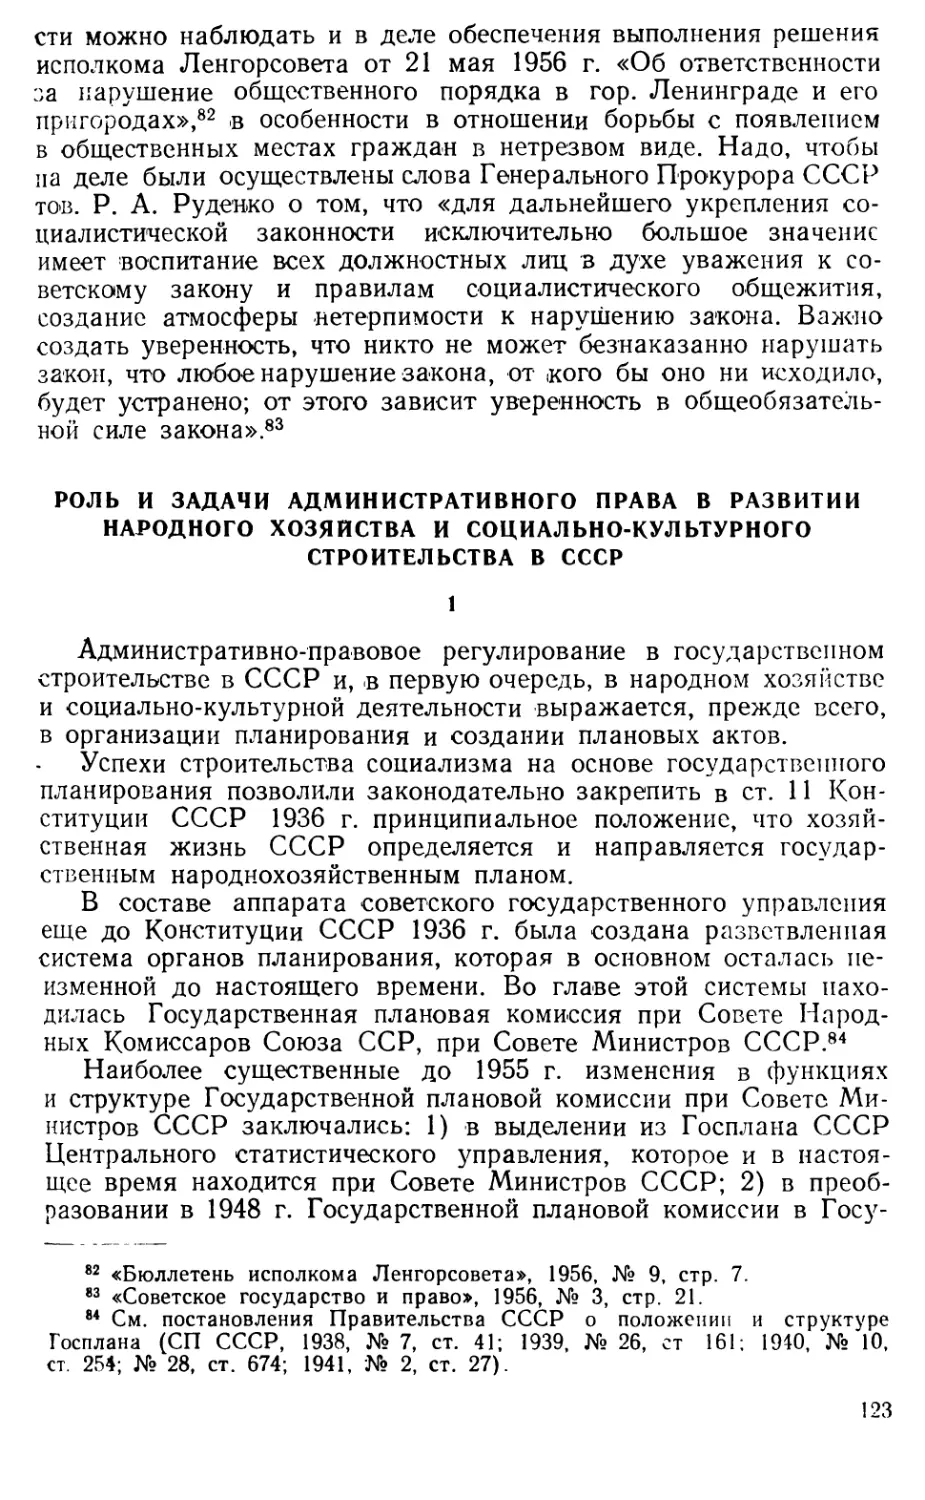 Роль и задачи административного права в развитии народного хозяйства и социально-культурного строительства в СССР.